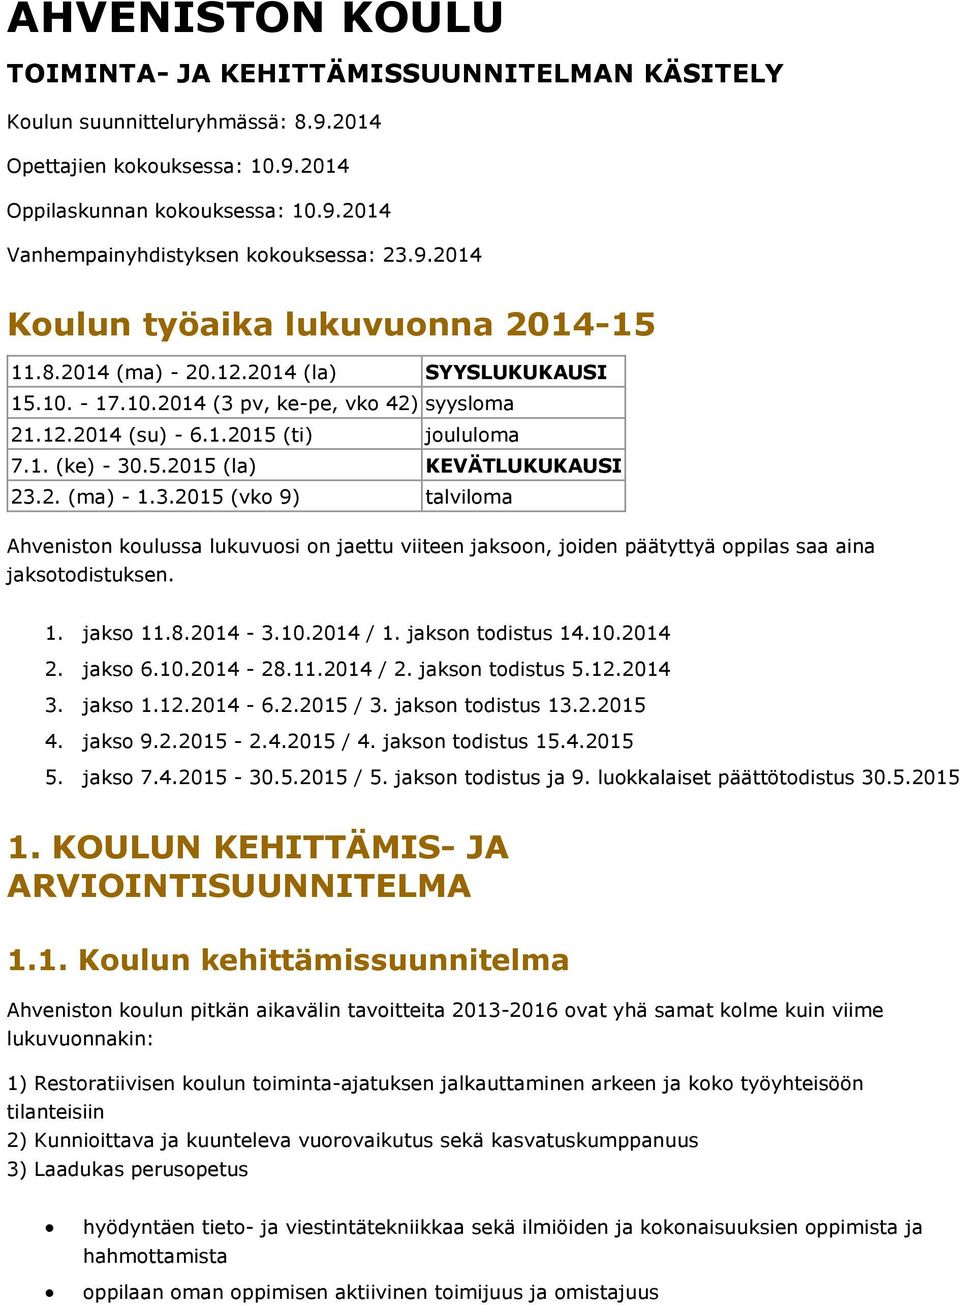 2. (ma) - 1.3.2015 (vko 9) talviloma Ahveniston koulussa lukuvuosi on jaettu viiteen jaksoon, joiden päätyttyä oppilas saa aina jaksotodistuksen. 1. jakso 11.8.2014-3.10.2014 / 1. jakson todistus 14.